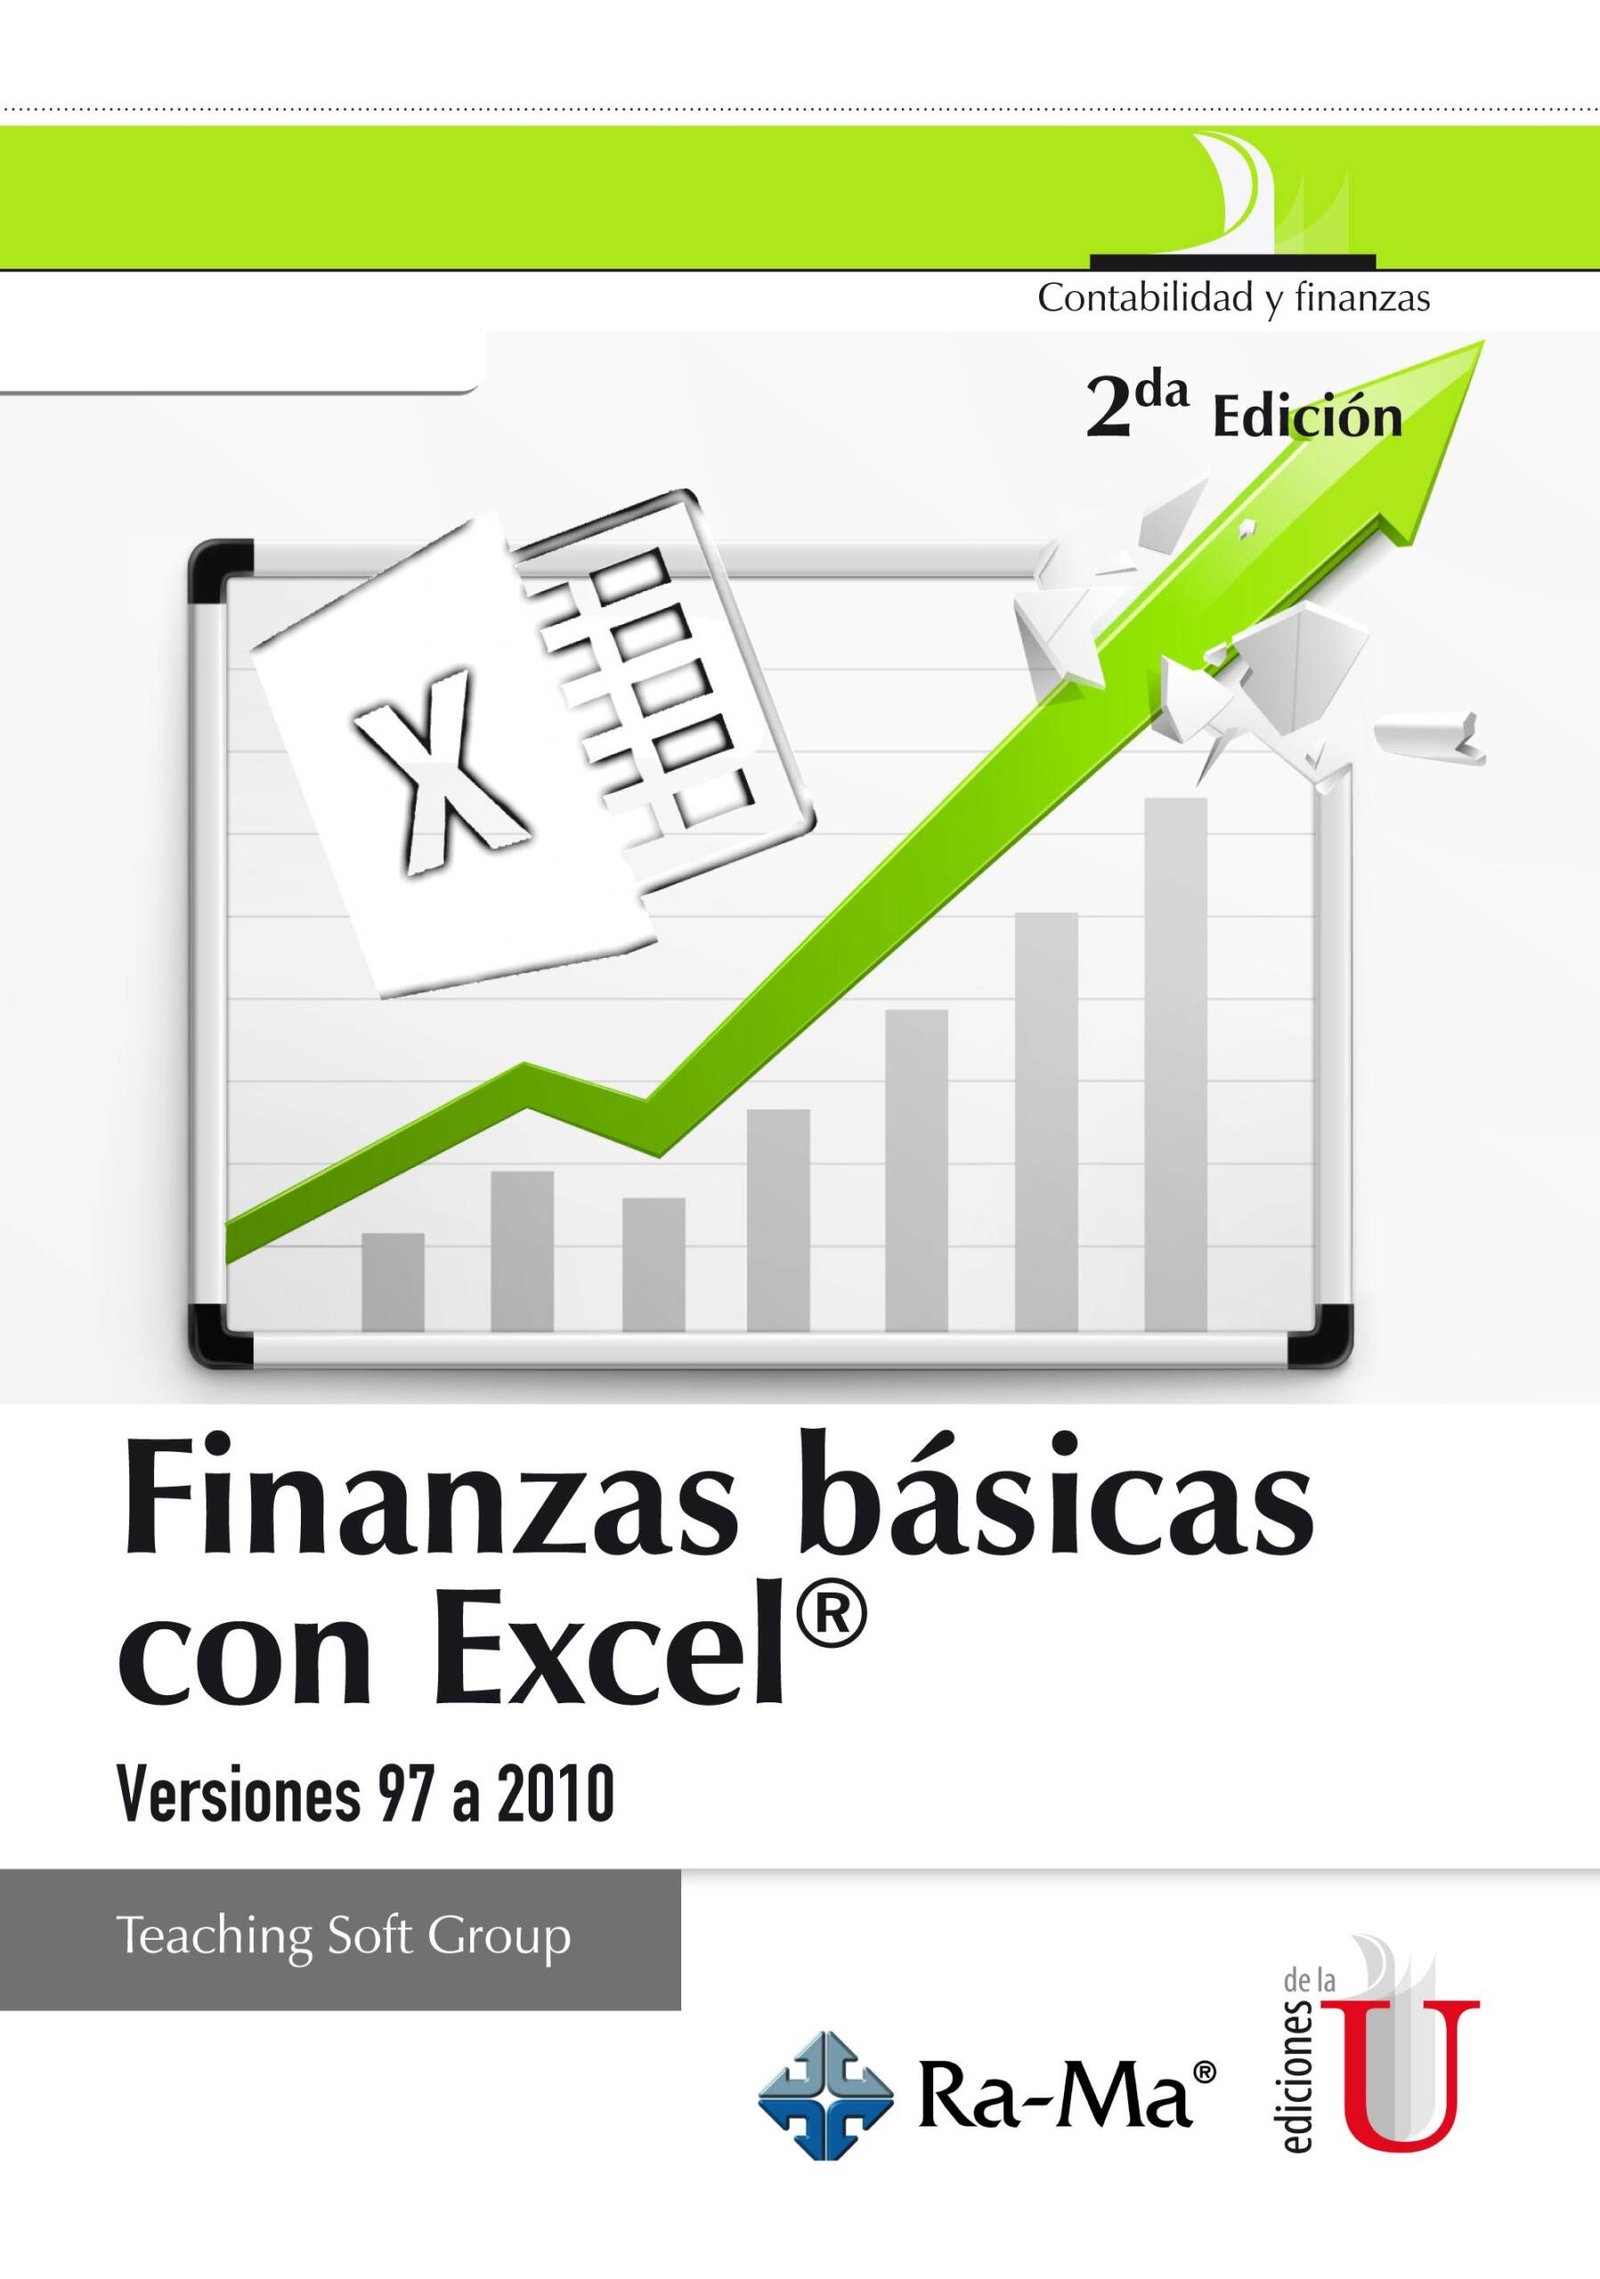 Finanzas básicas con Excel. - Ediciones de la U - Librería - Compra ahora